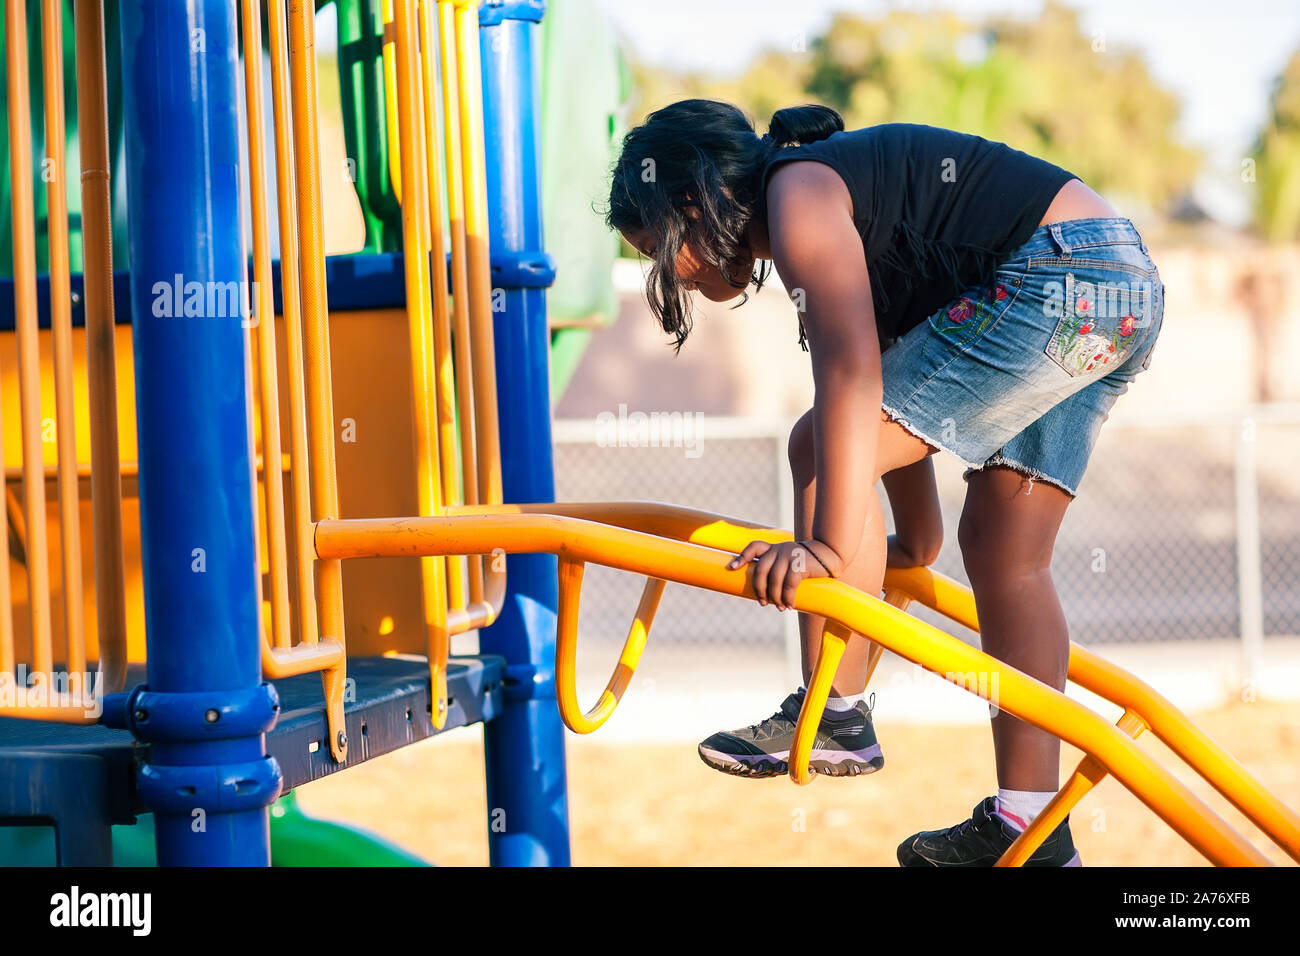 Ein junges Mädchen klettern eine Leiter auf einer Jungle Gym und Ihren Gleichgewichtssinn entwickeln. Stockfoto